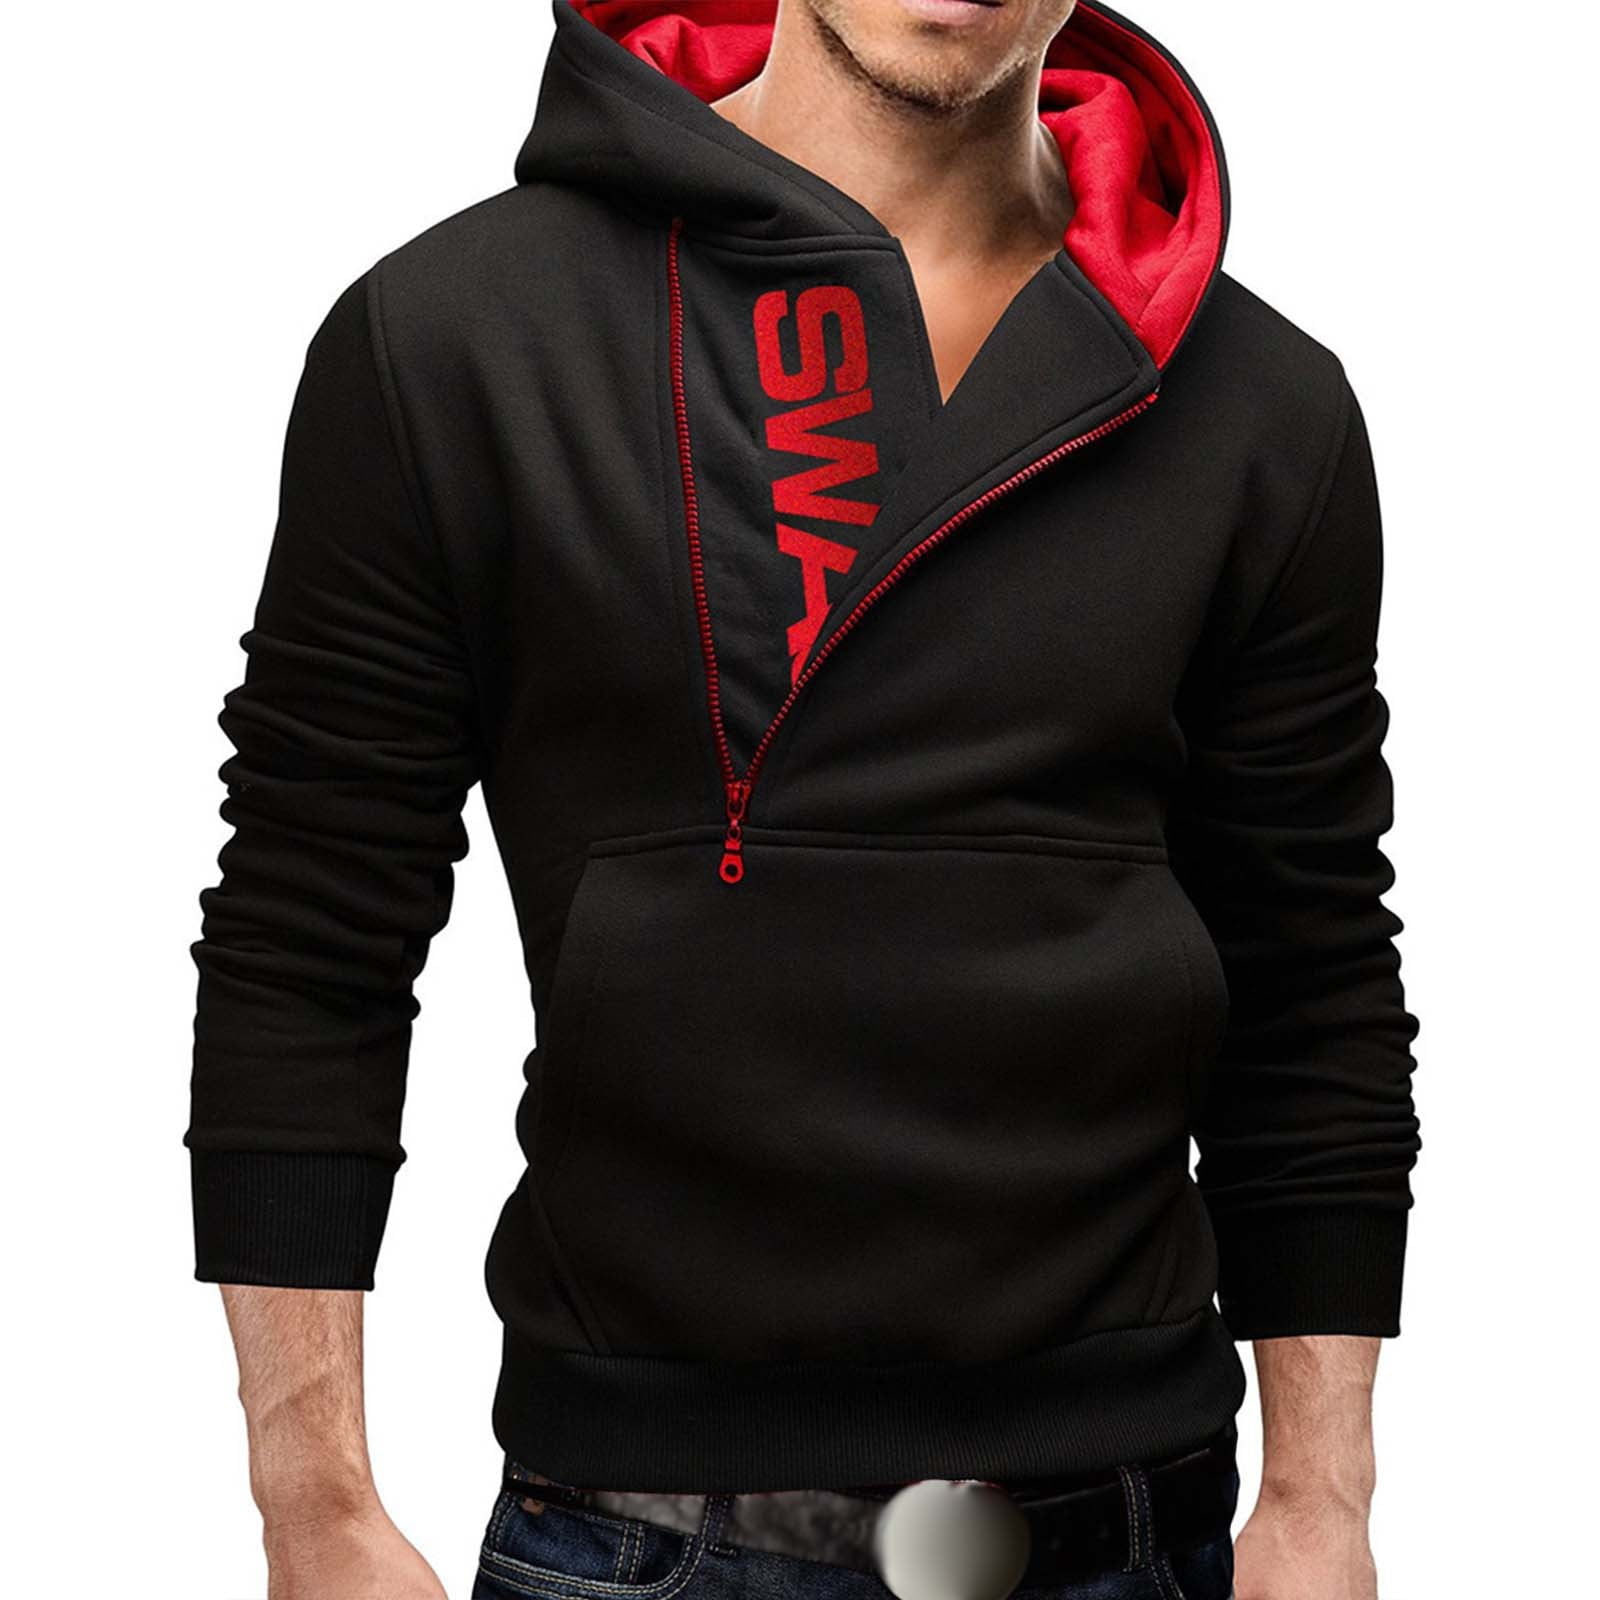 Graphic Hoodies For Men Mens' Long Sleeve Hoodie Hooded Sweatshirt Tops ...